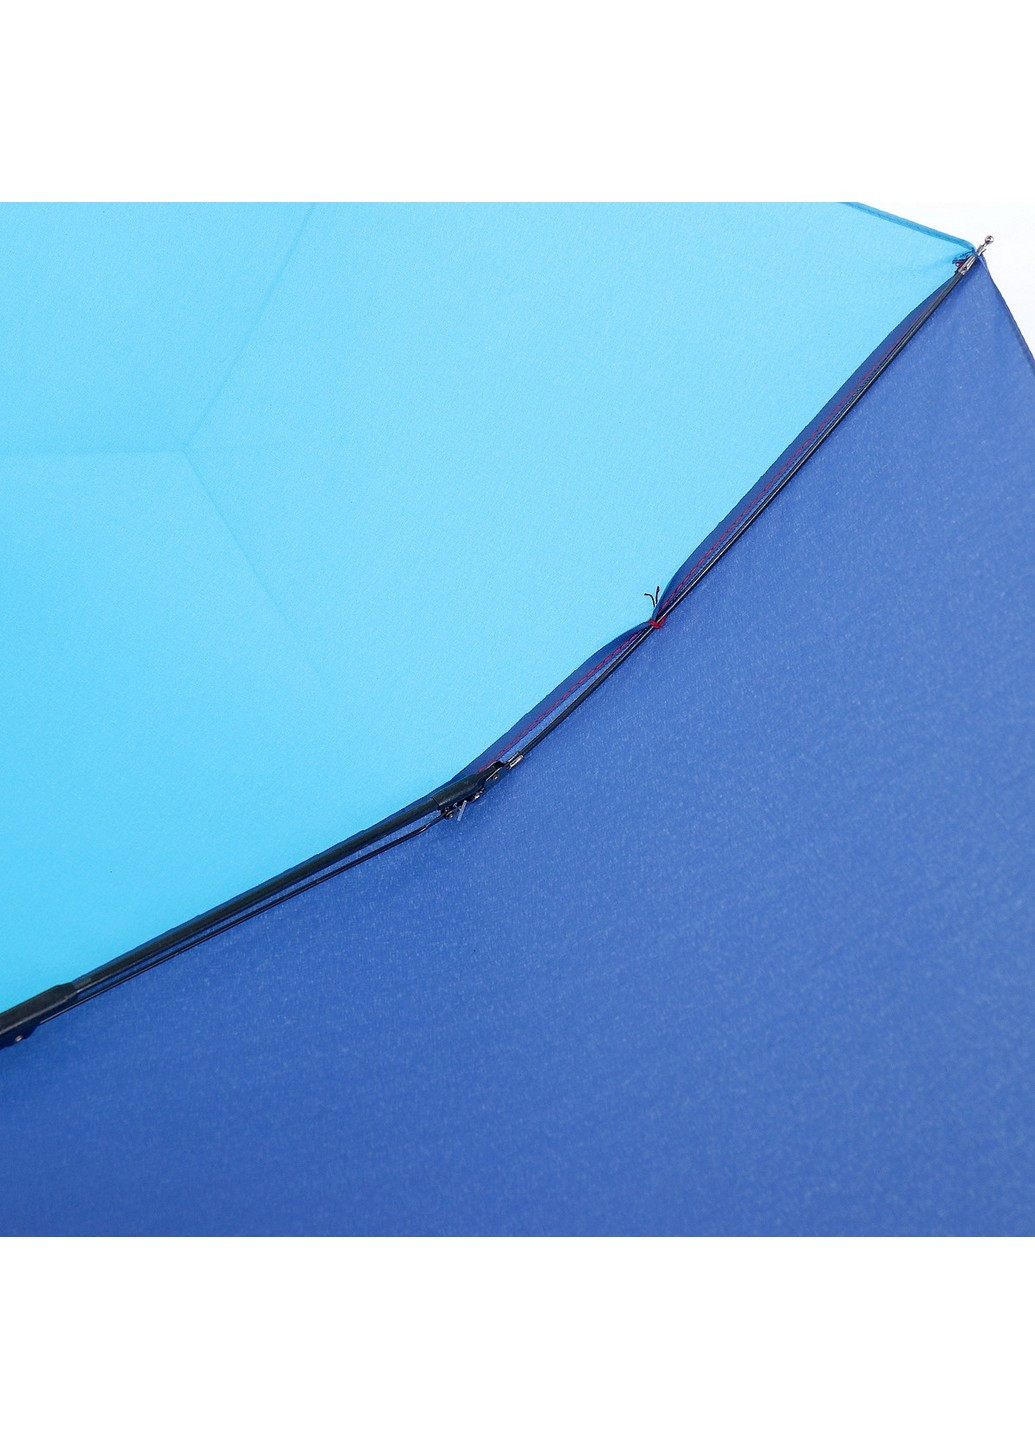 Зонт женский полуавтомат 97 см ArtRain (255375536)